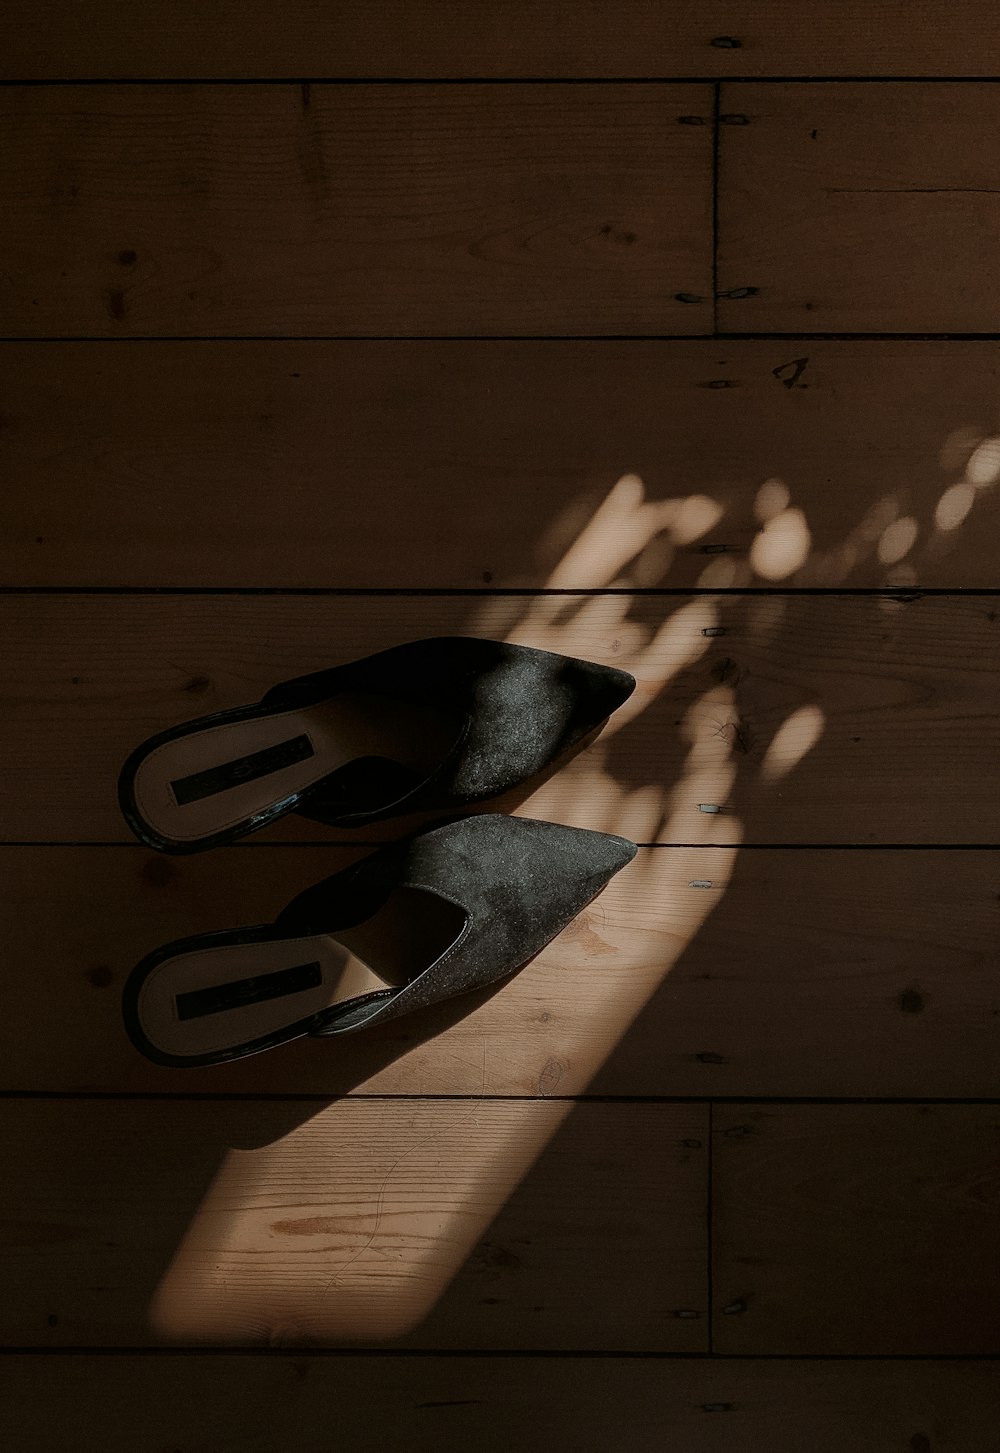 black metal tool on brown wooden floor